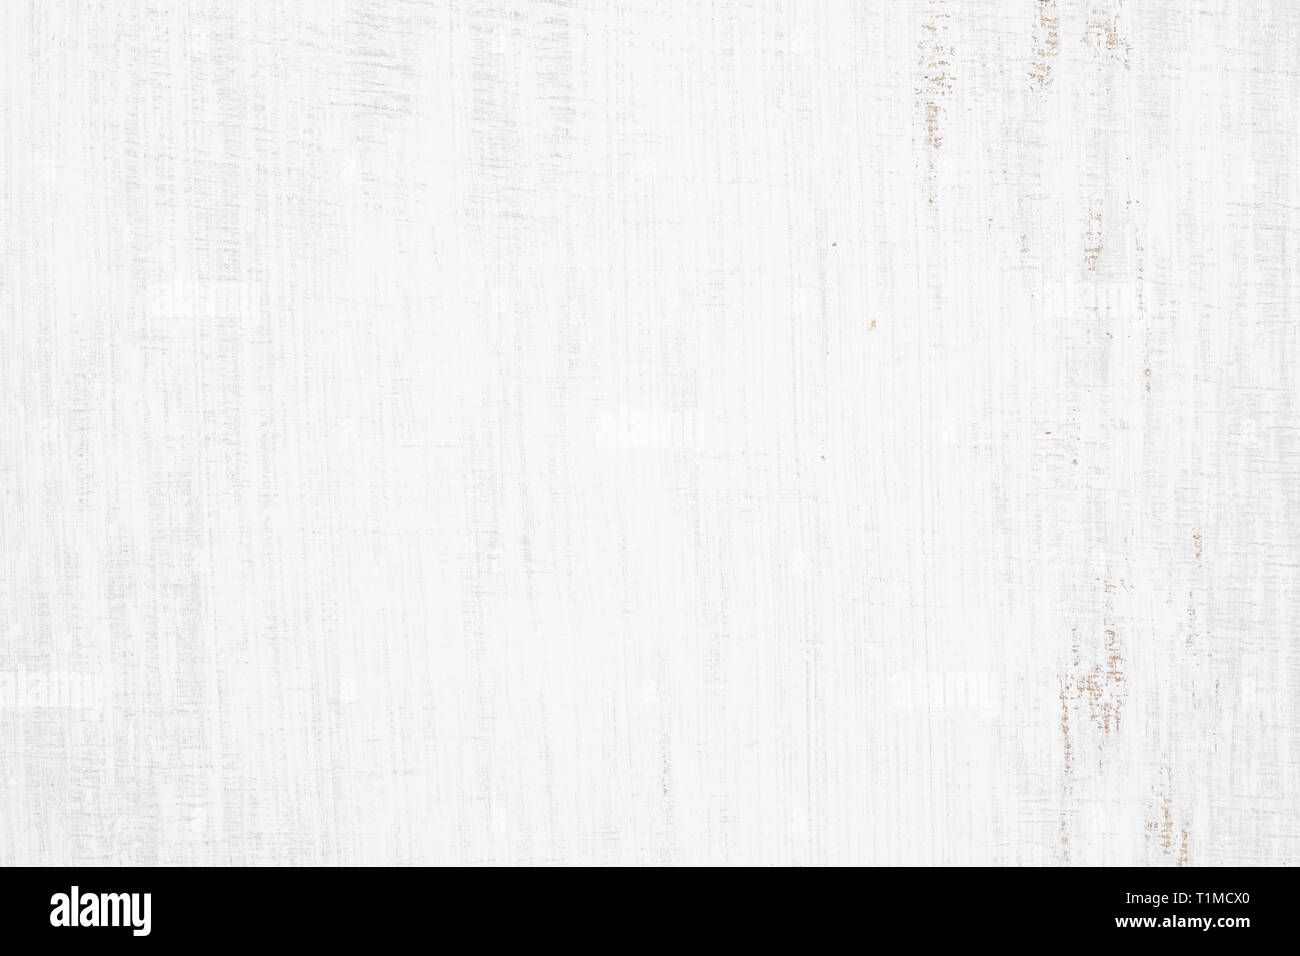 Legno verniciato bianco immagini e fotografie stock ad alta risoluzione -  Alamy